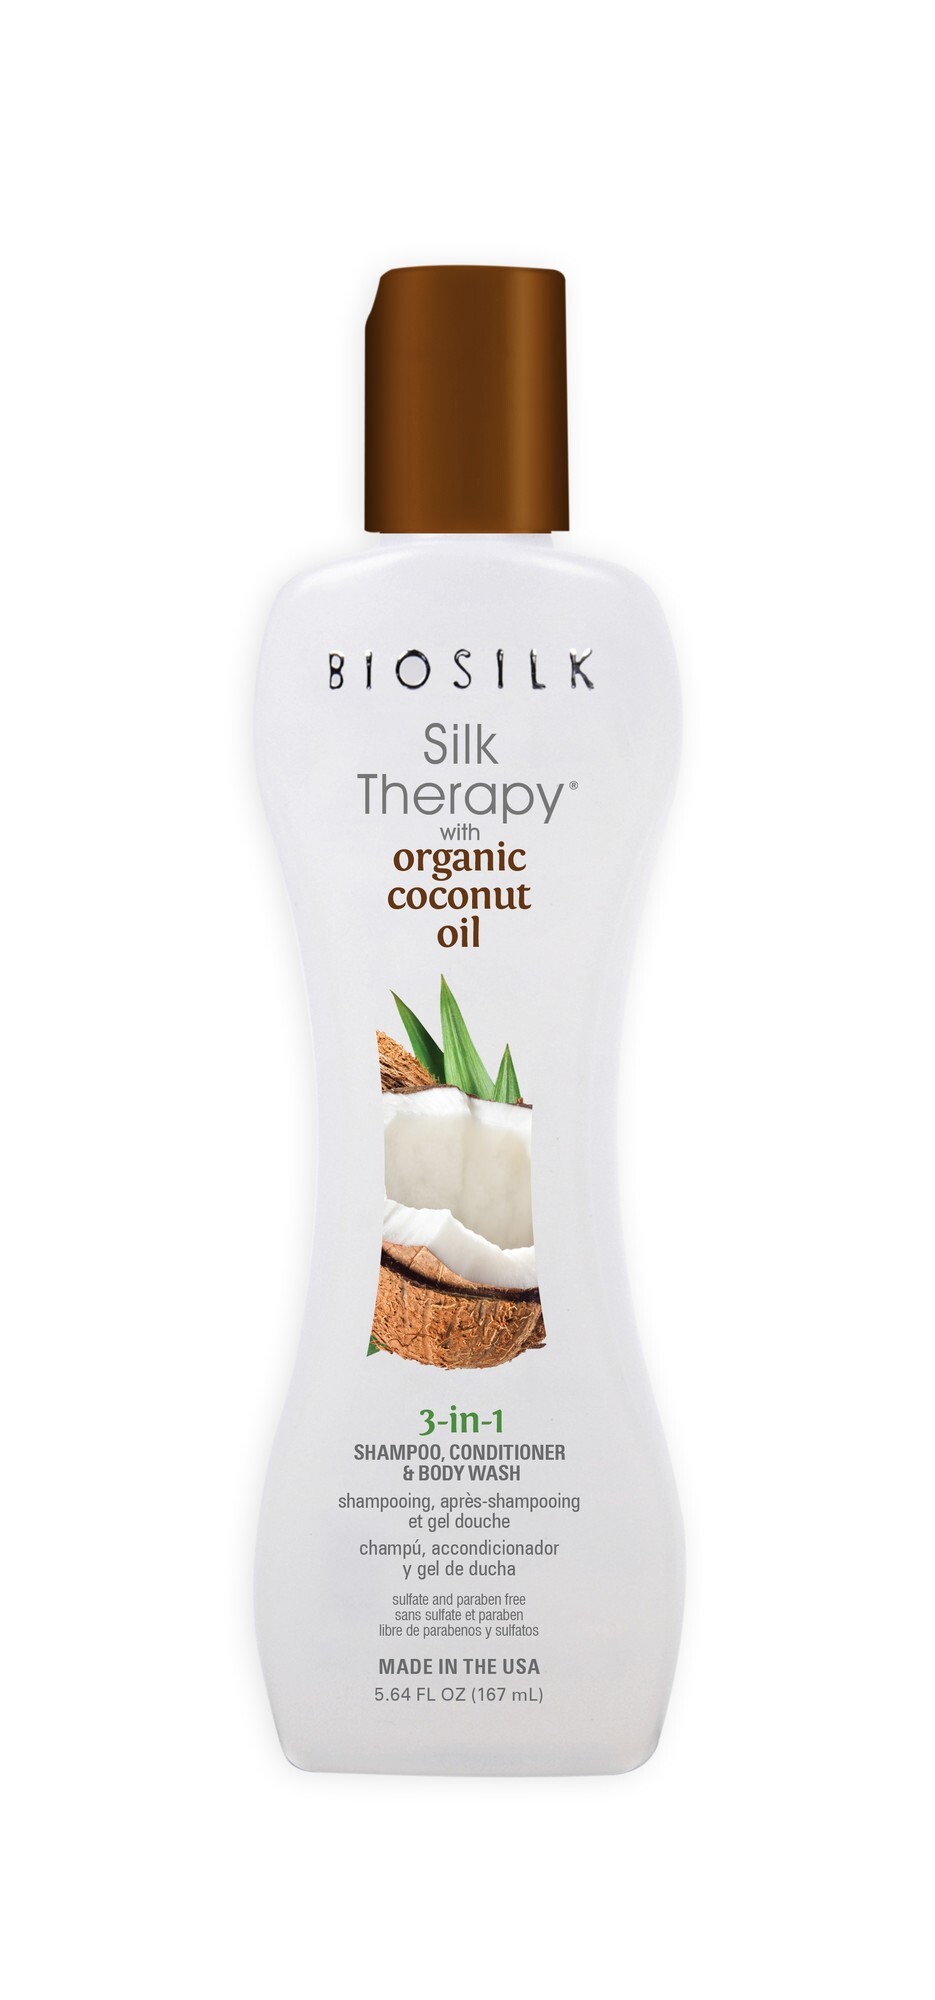 Biosilk Silk Therapy with Coconut Oil 3 in 1 167ml